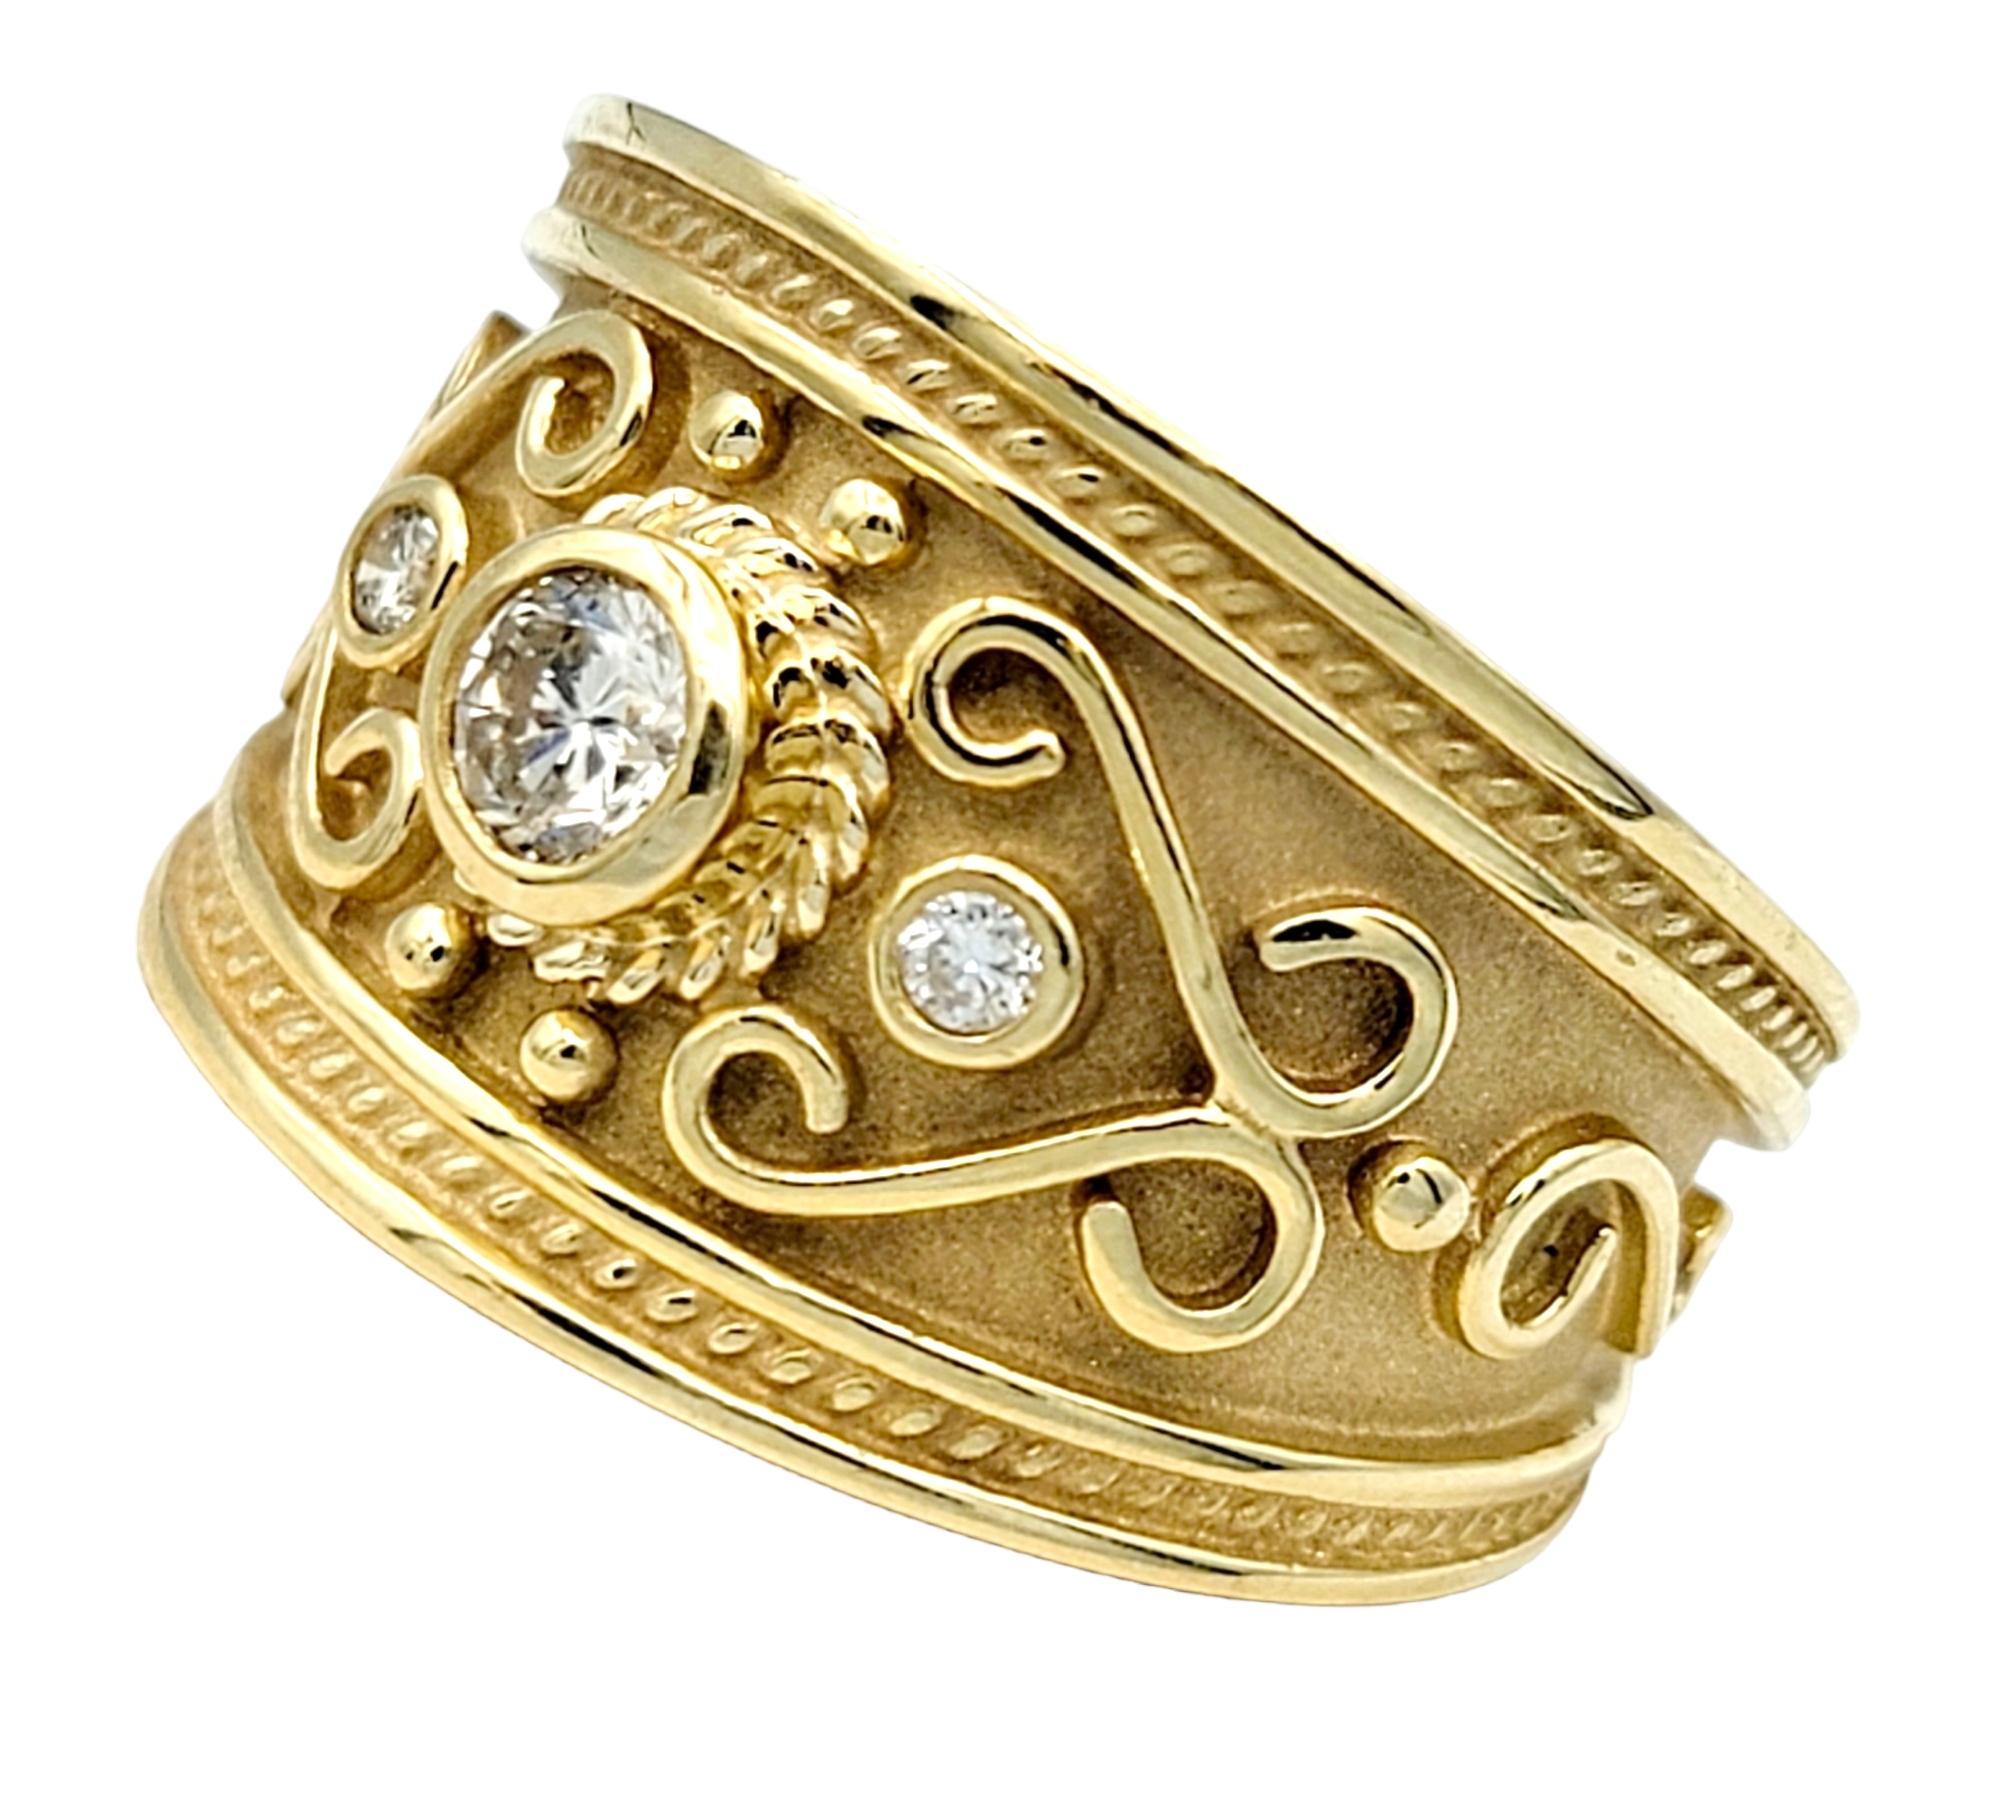 Ringgröße: 8 

Eleganz und Kunstfertigkeit treffen in diesem Le Vian Ring mit verjüngtem Schaft aufeinander, ein Beweis für exquisite Handwerkskunst und zeitloses Design. Das Design im etruskischen Stil mit seinen schimmernden Diamanten, den